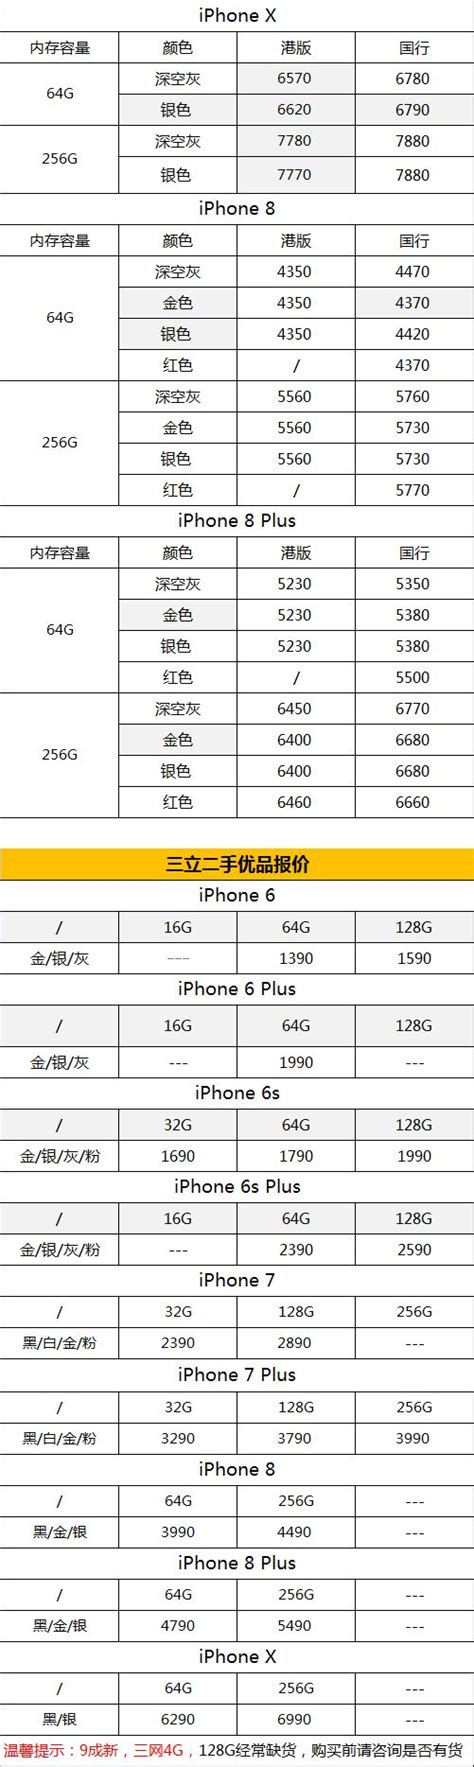 iphone7plus今日报价